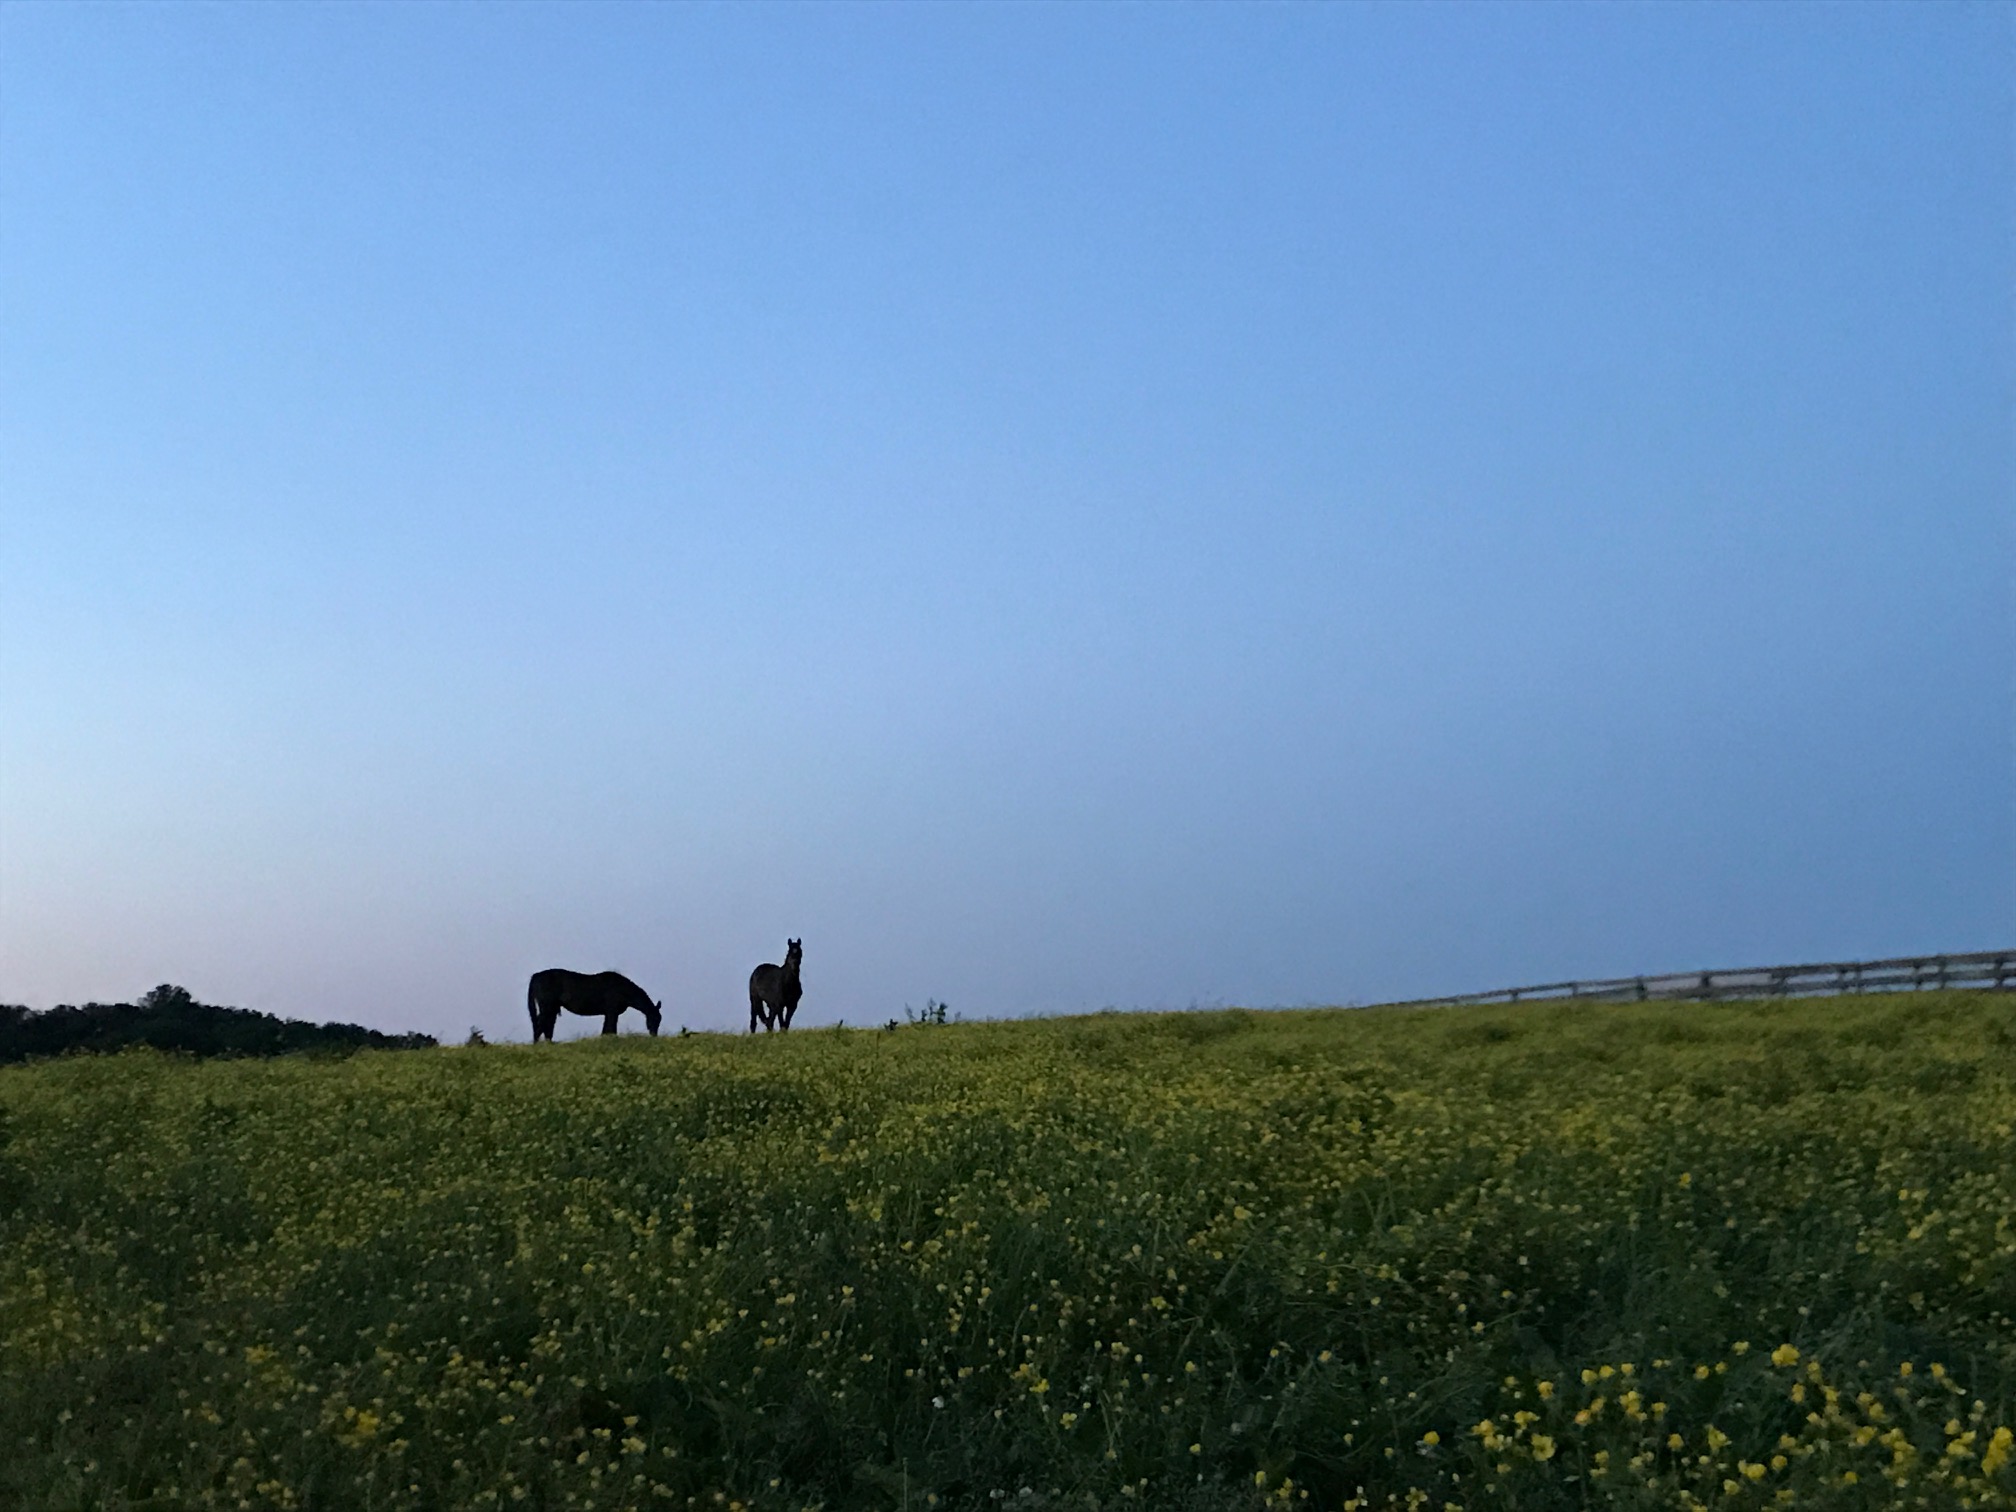 A peaceful evening on the farm.